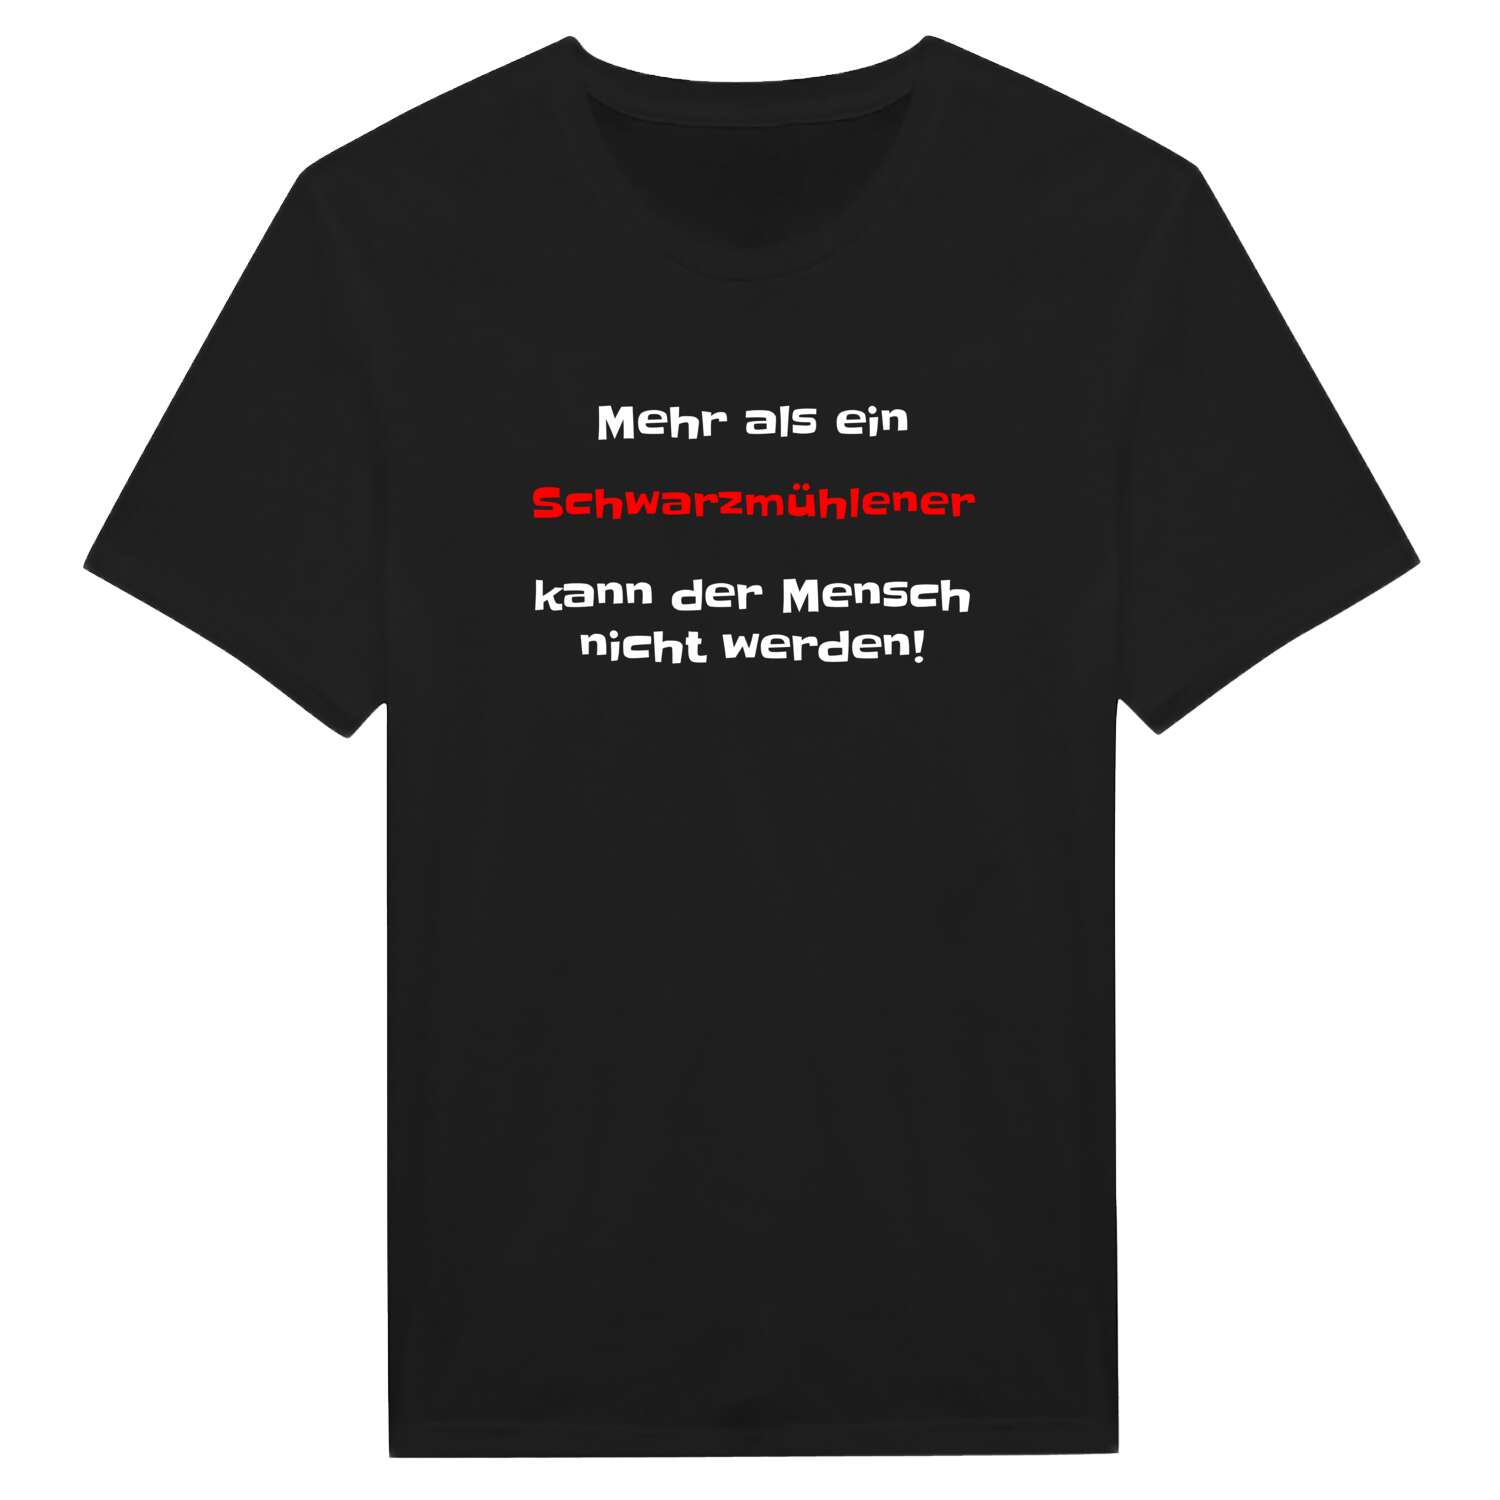 Schwarzmühle T-Shirt »Mehr als ein«